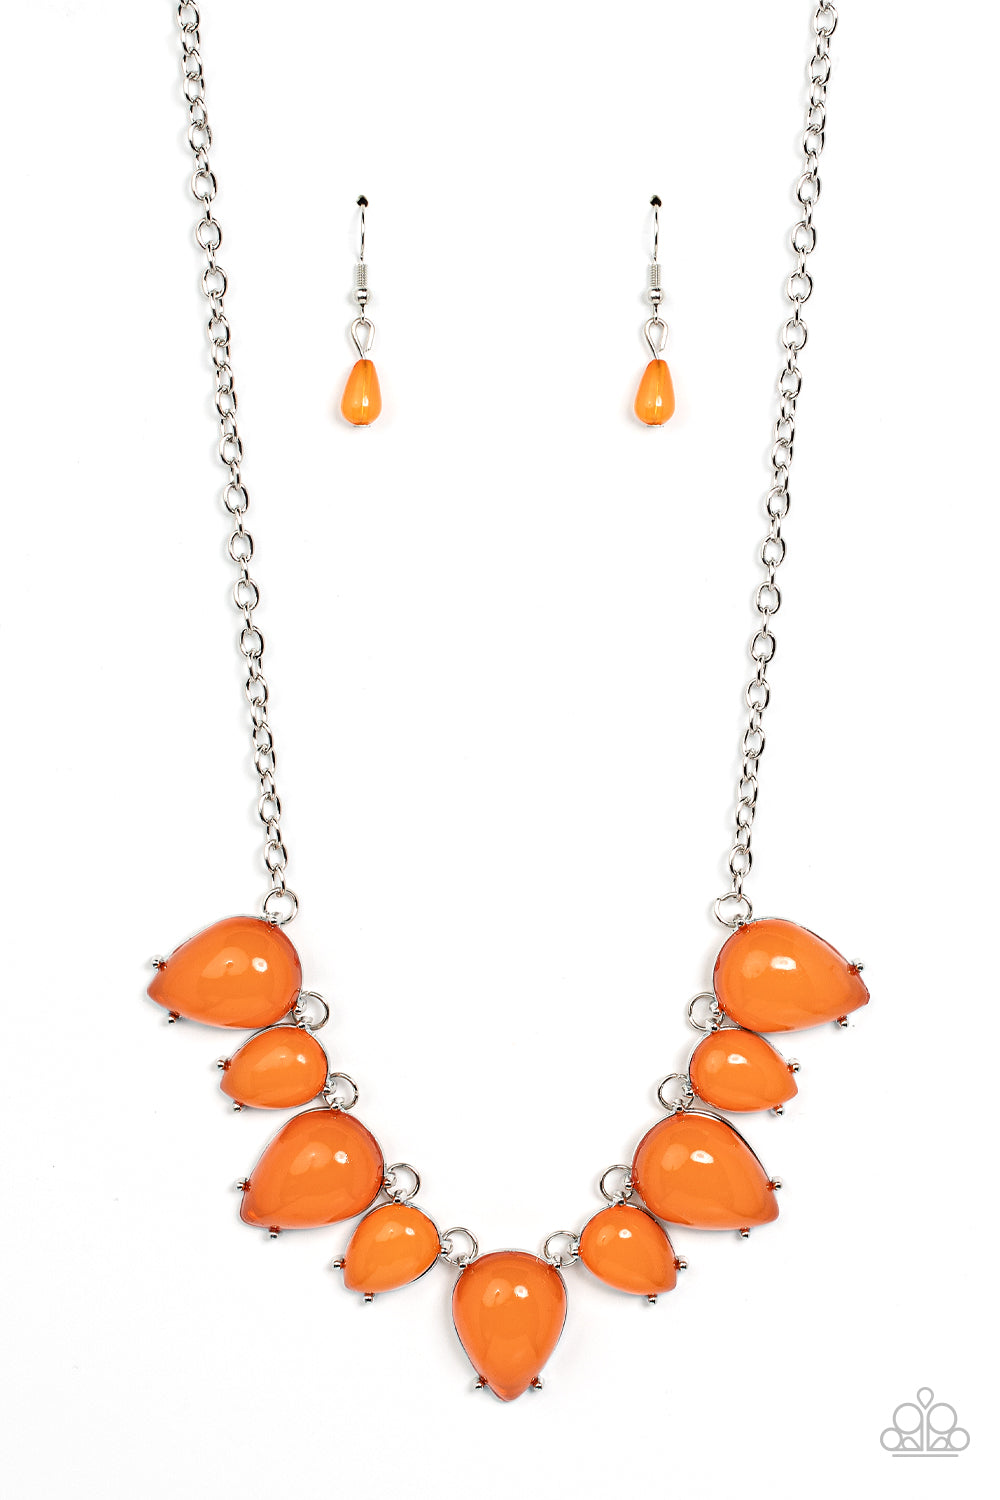 Pampered Poolside - Orange necklace B076